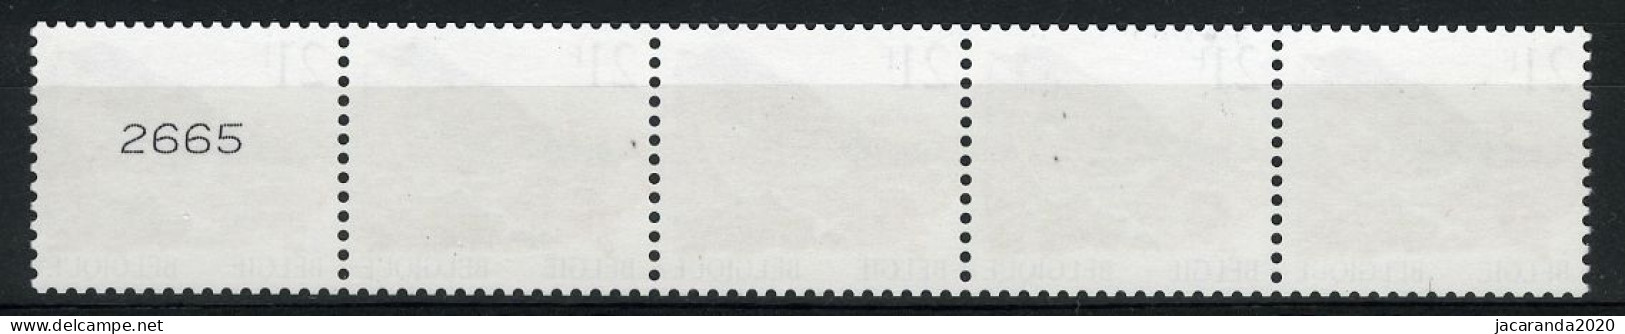 België R89a - Vogels - Oiseaux - Buzin (2792) - 21F - Kramsvogel - Strook Met 4 Cijfers - Bande Avec 4 Chiffres - Coil Stamps